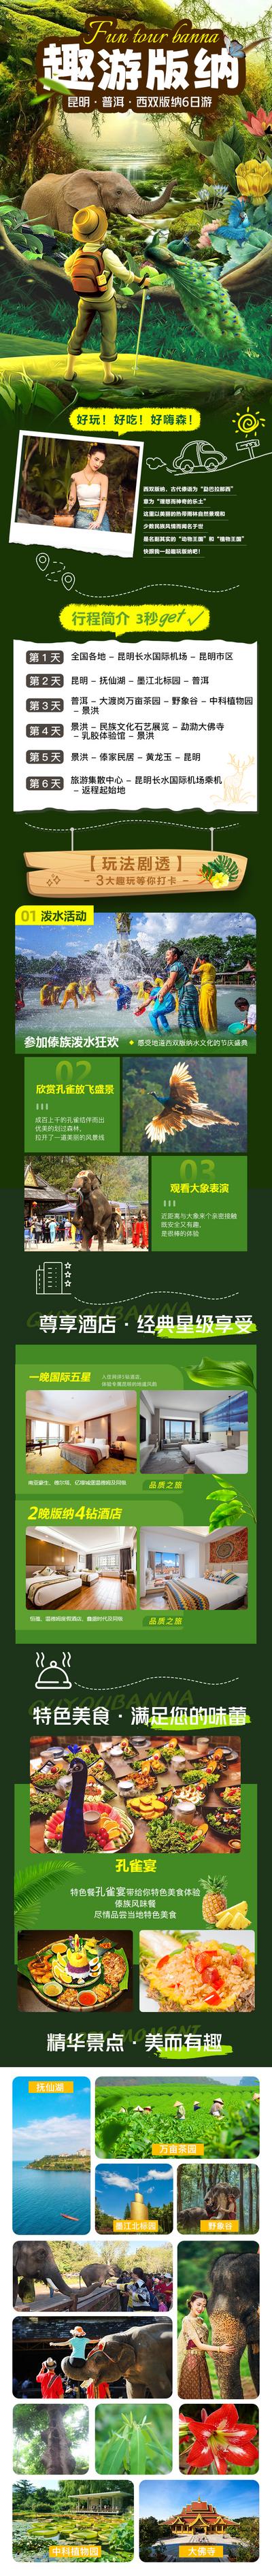 【南门网】广告 电商 长图 西双版纳 旅游 森林 趣味 孔雀 大象